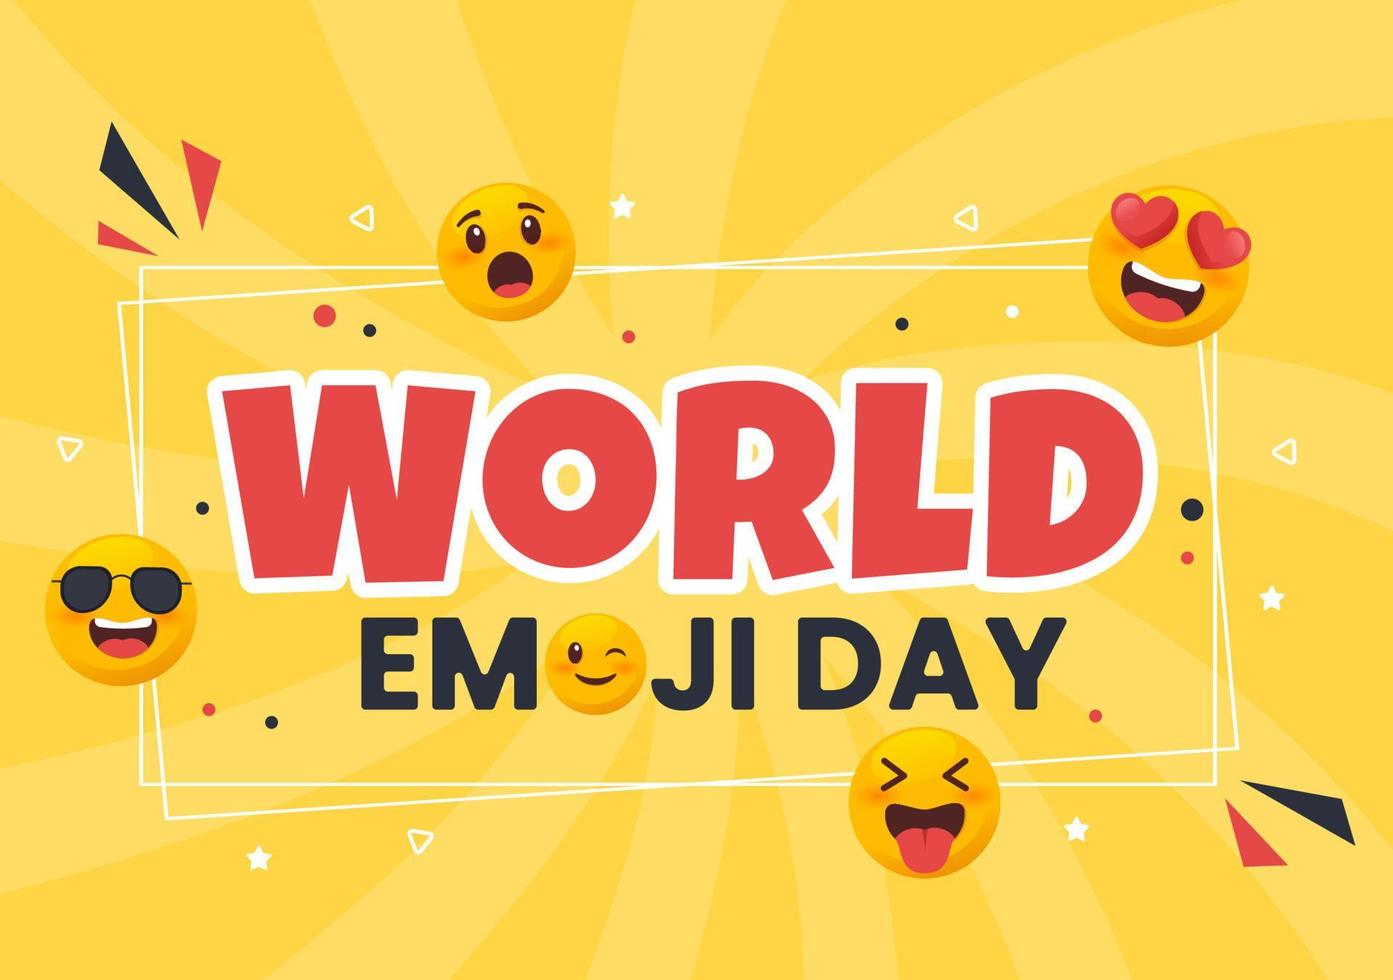 célébration de la journée mondiale des emoji avec des événements et des sorties de produits dans différentes expressions faciales sous forme de dessin animé mignon en illustration de fond plat vecteur